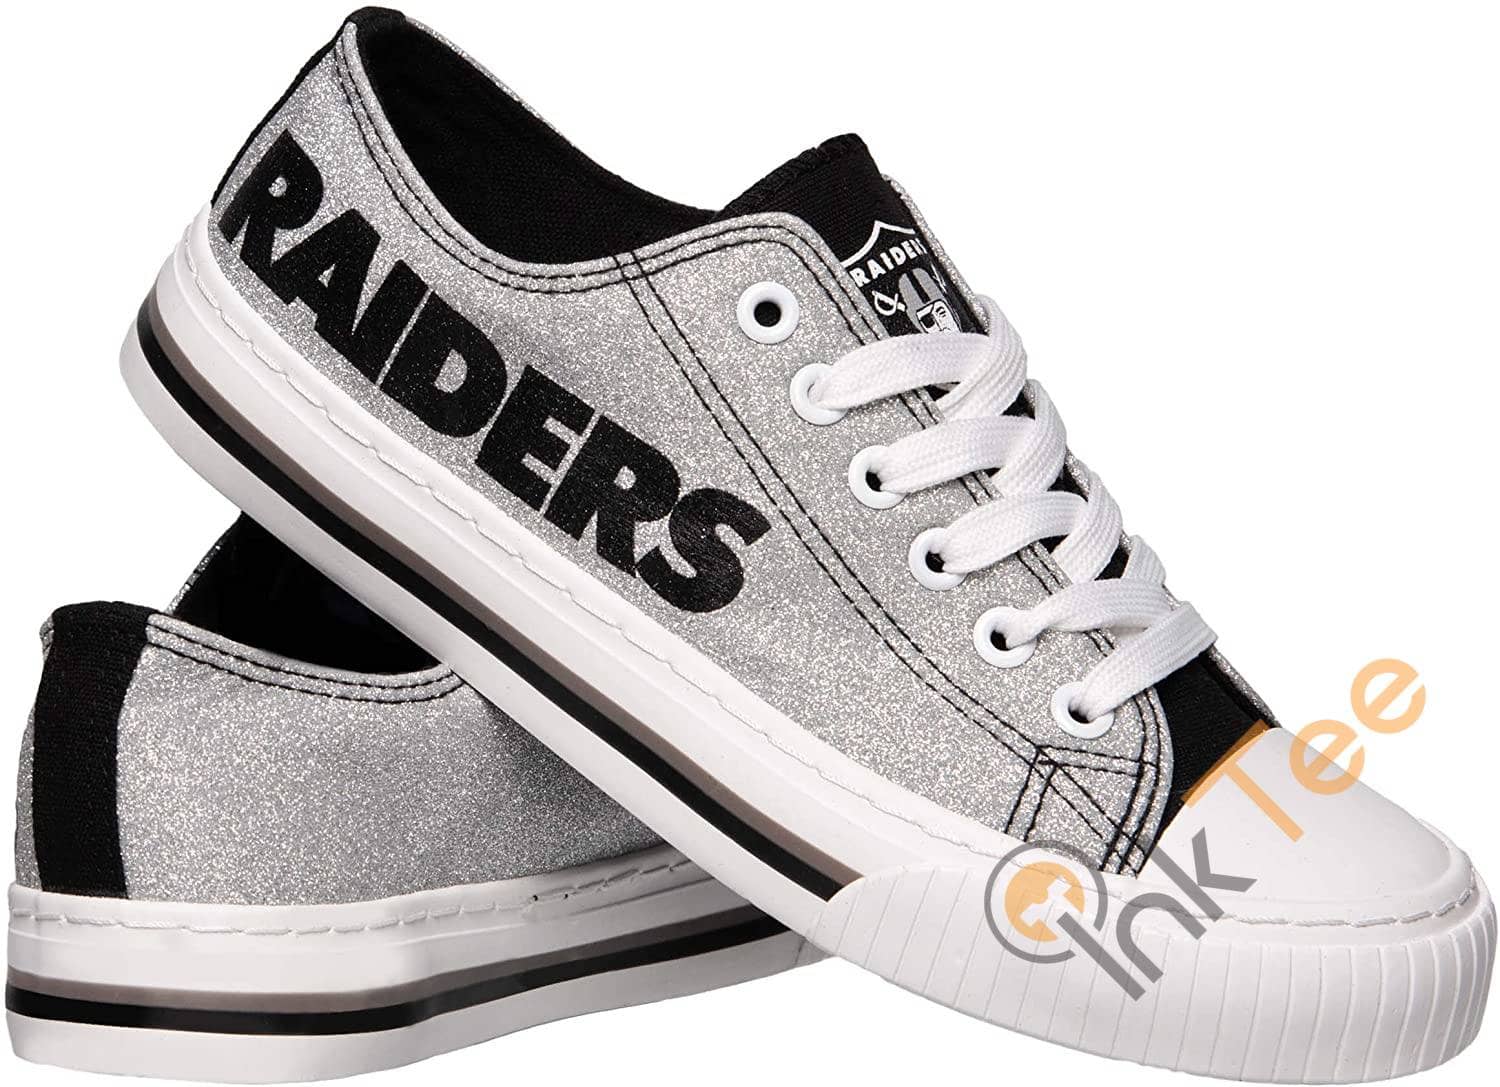 Nfl Oakland Raiders Team Low Top Sneakers